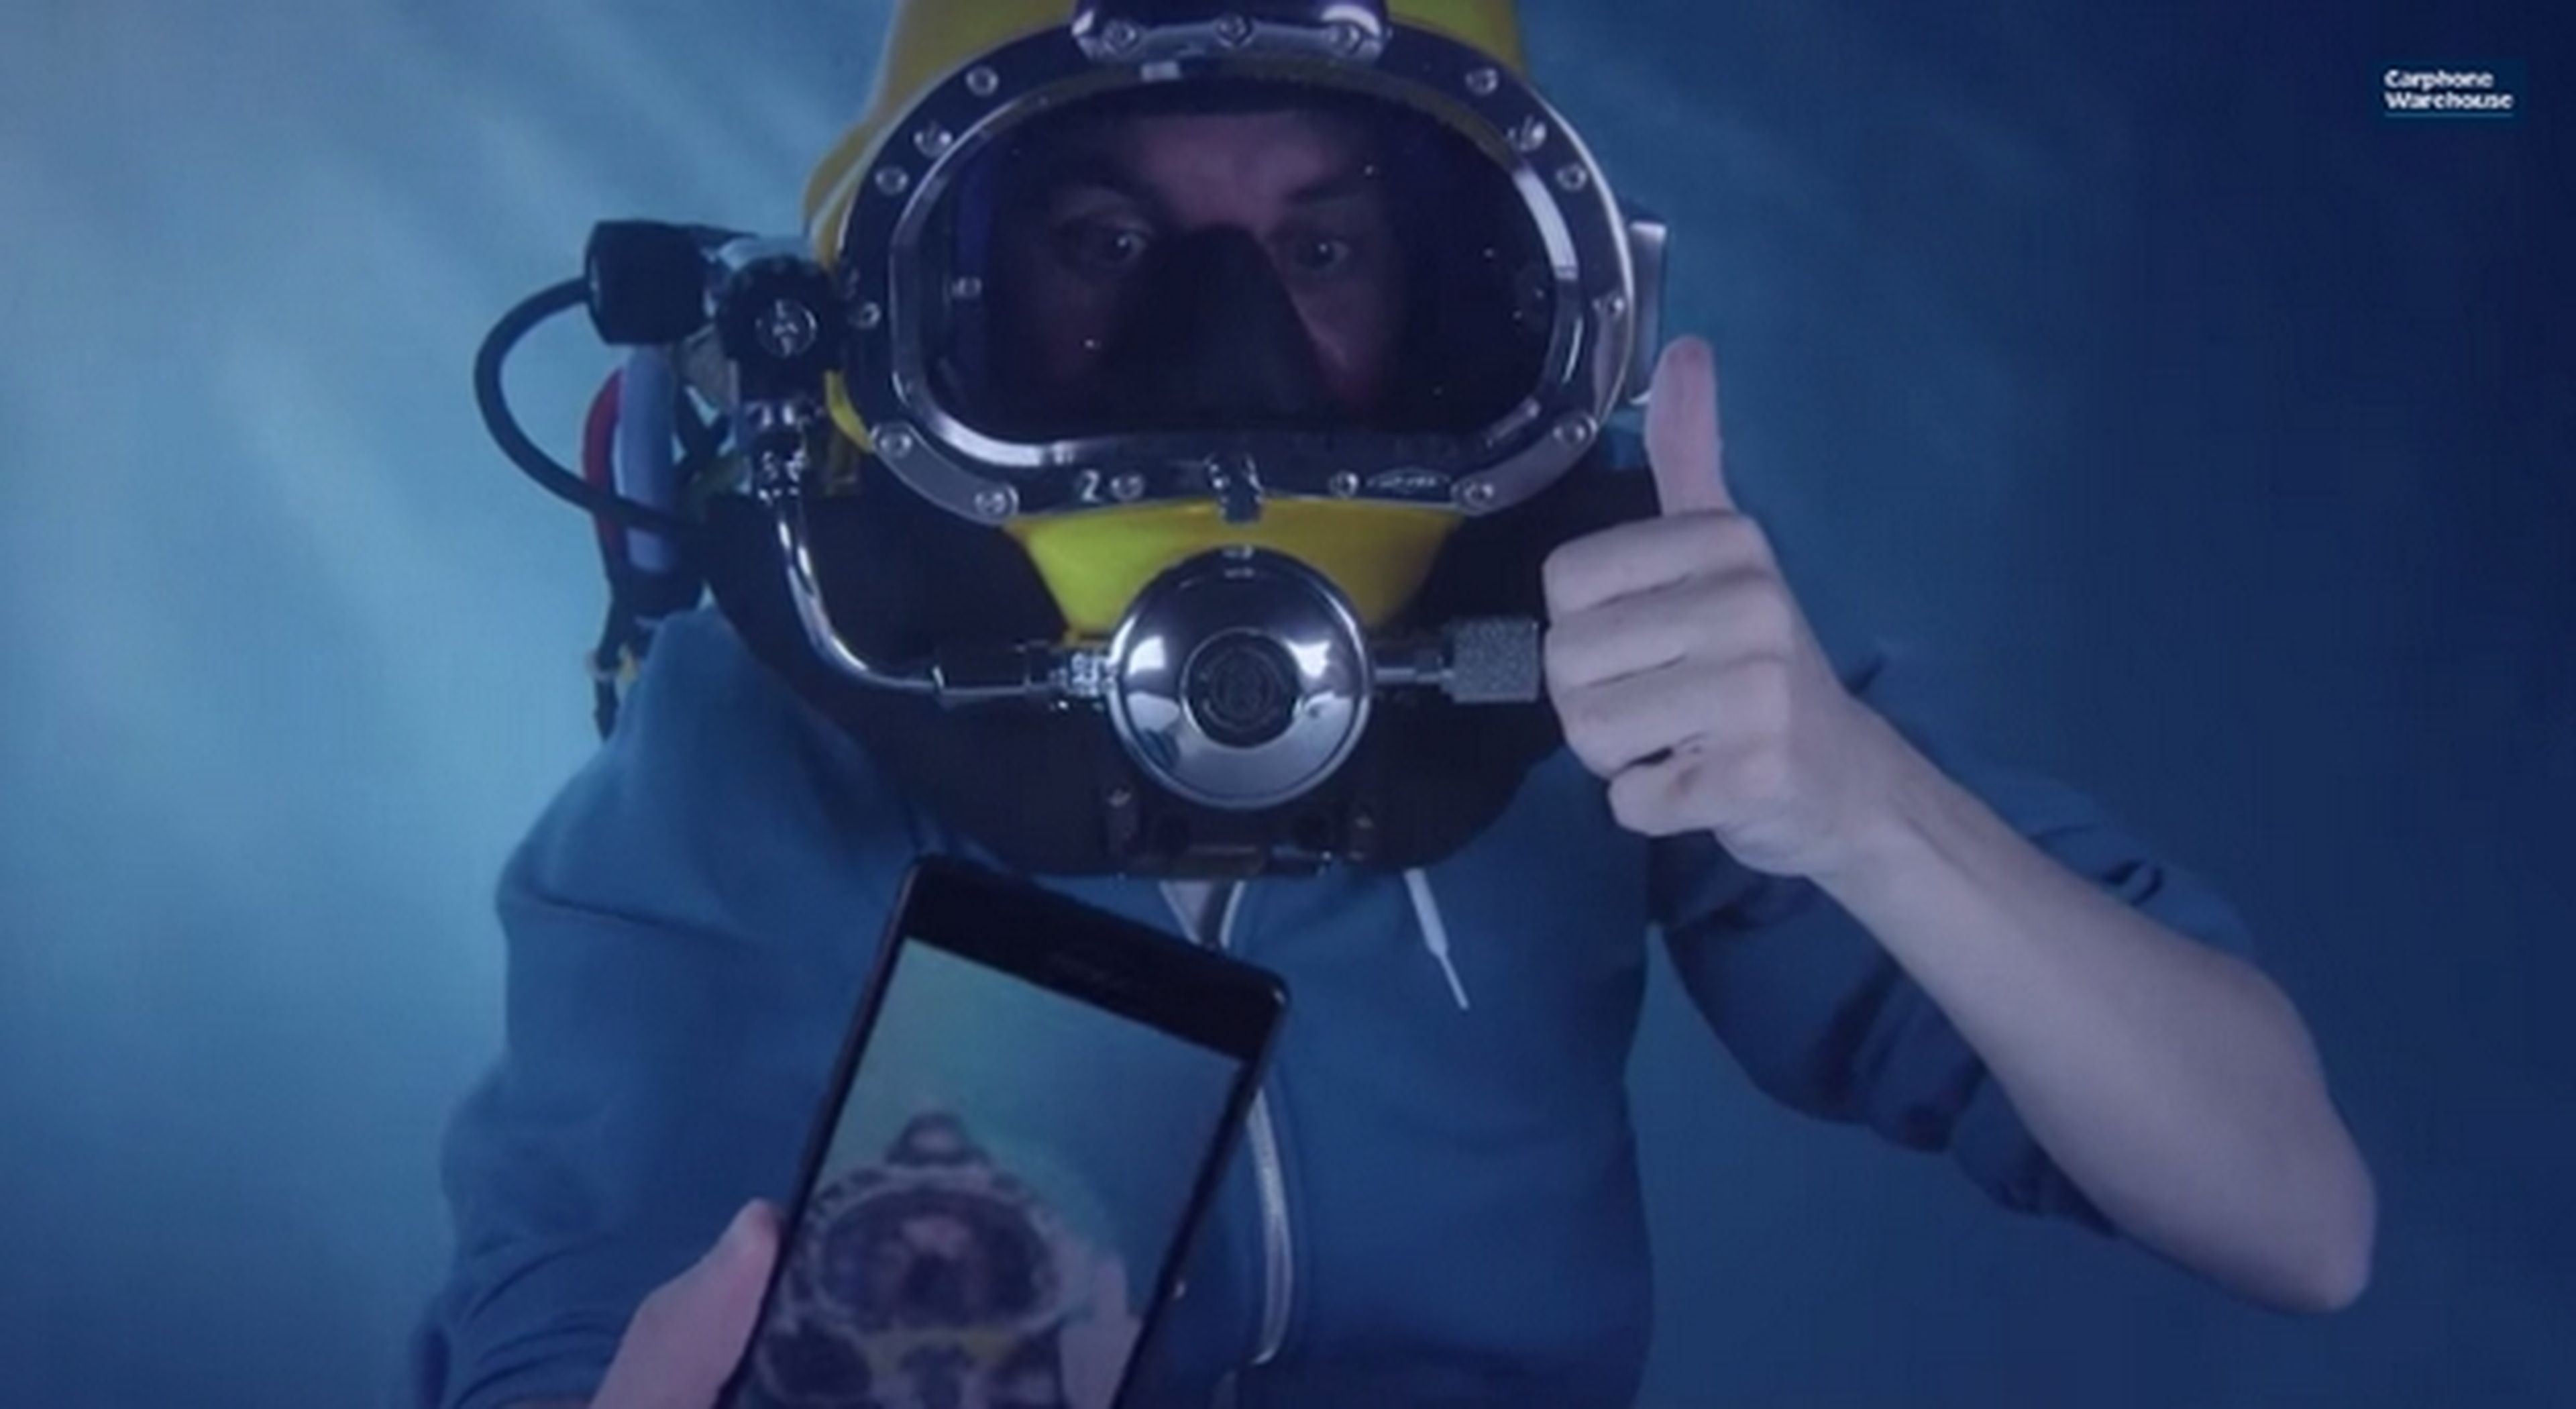 Unboxing bajo el agua del Sony Xperia Z3